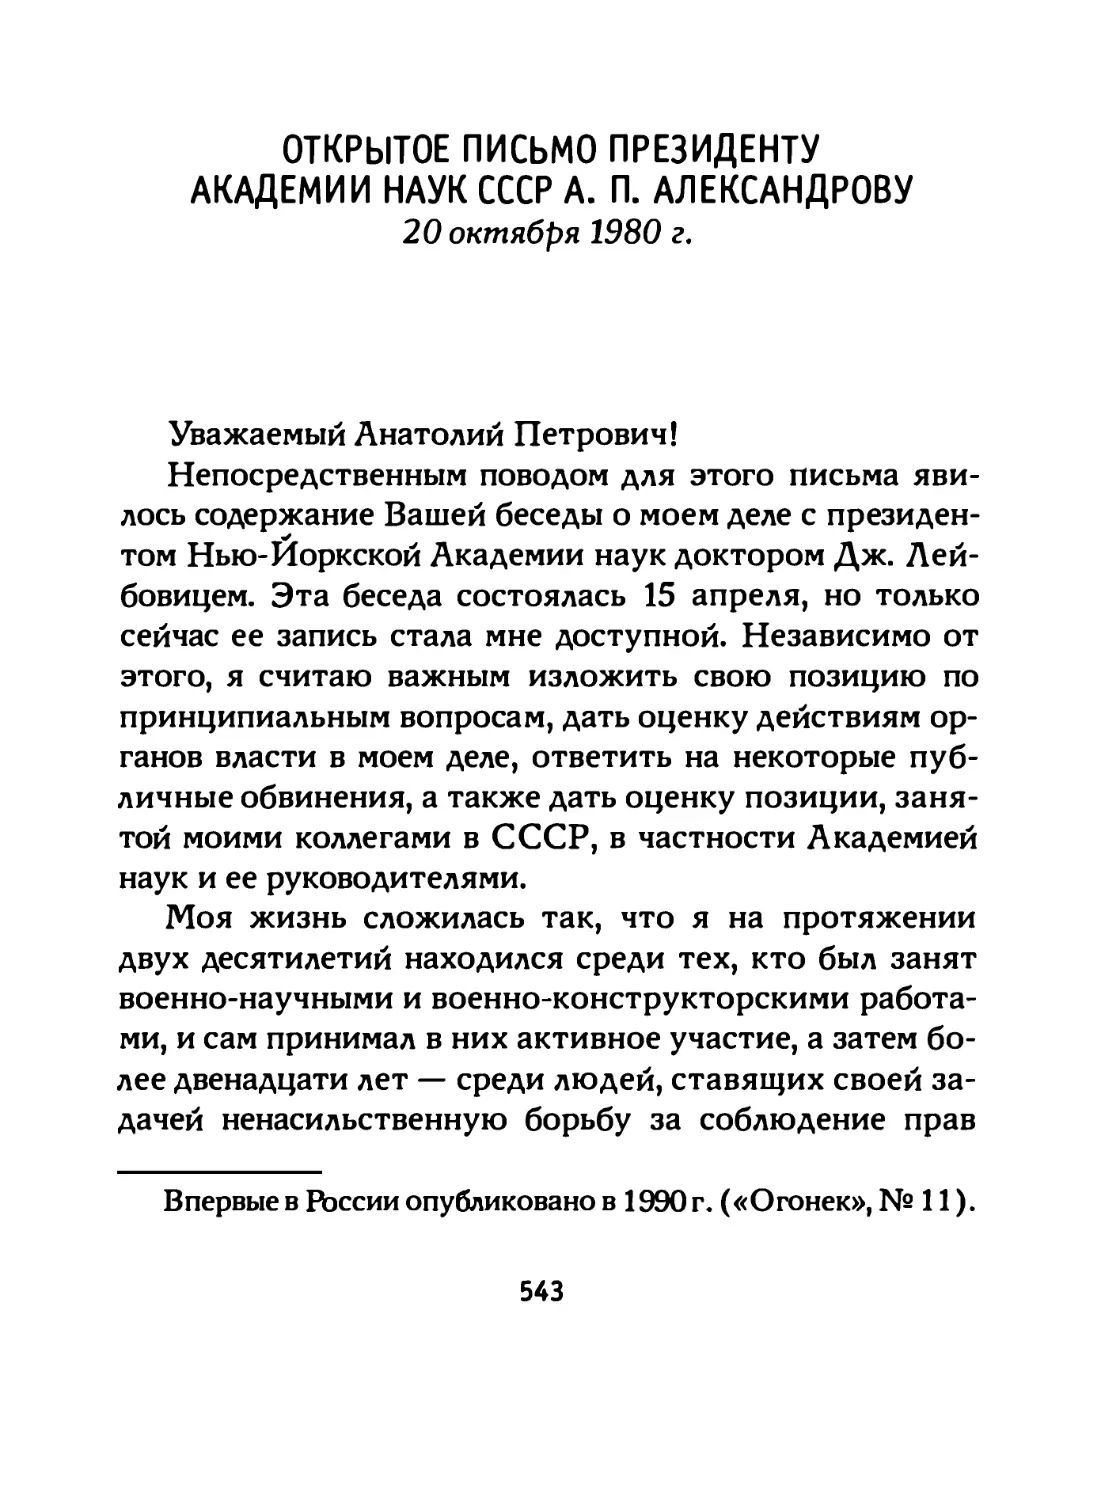 Открытое письмо Президенту Академии наук СССР А. П. Александрову (20 октября 1980 г.)